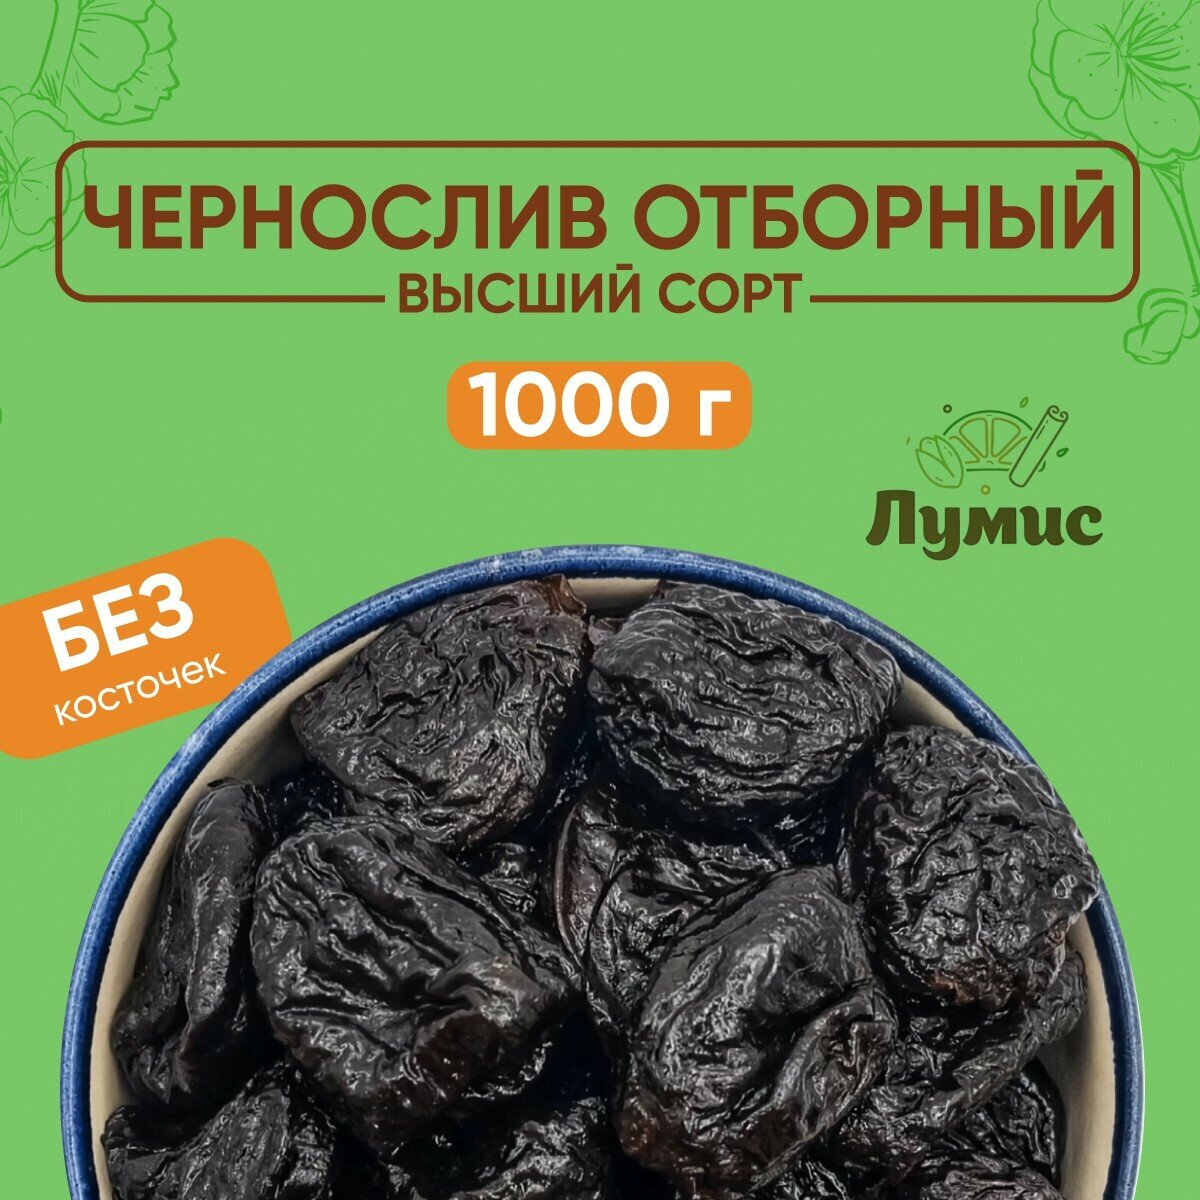 Чернослив без косточки "Лумис", Чили, Сухофрукты премиум качества, 1 кг (1000 гр)